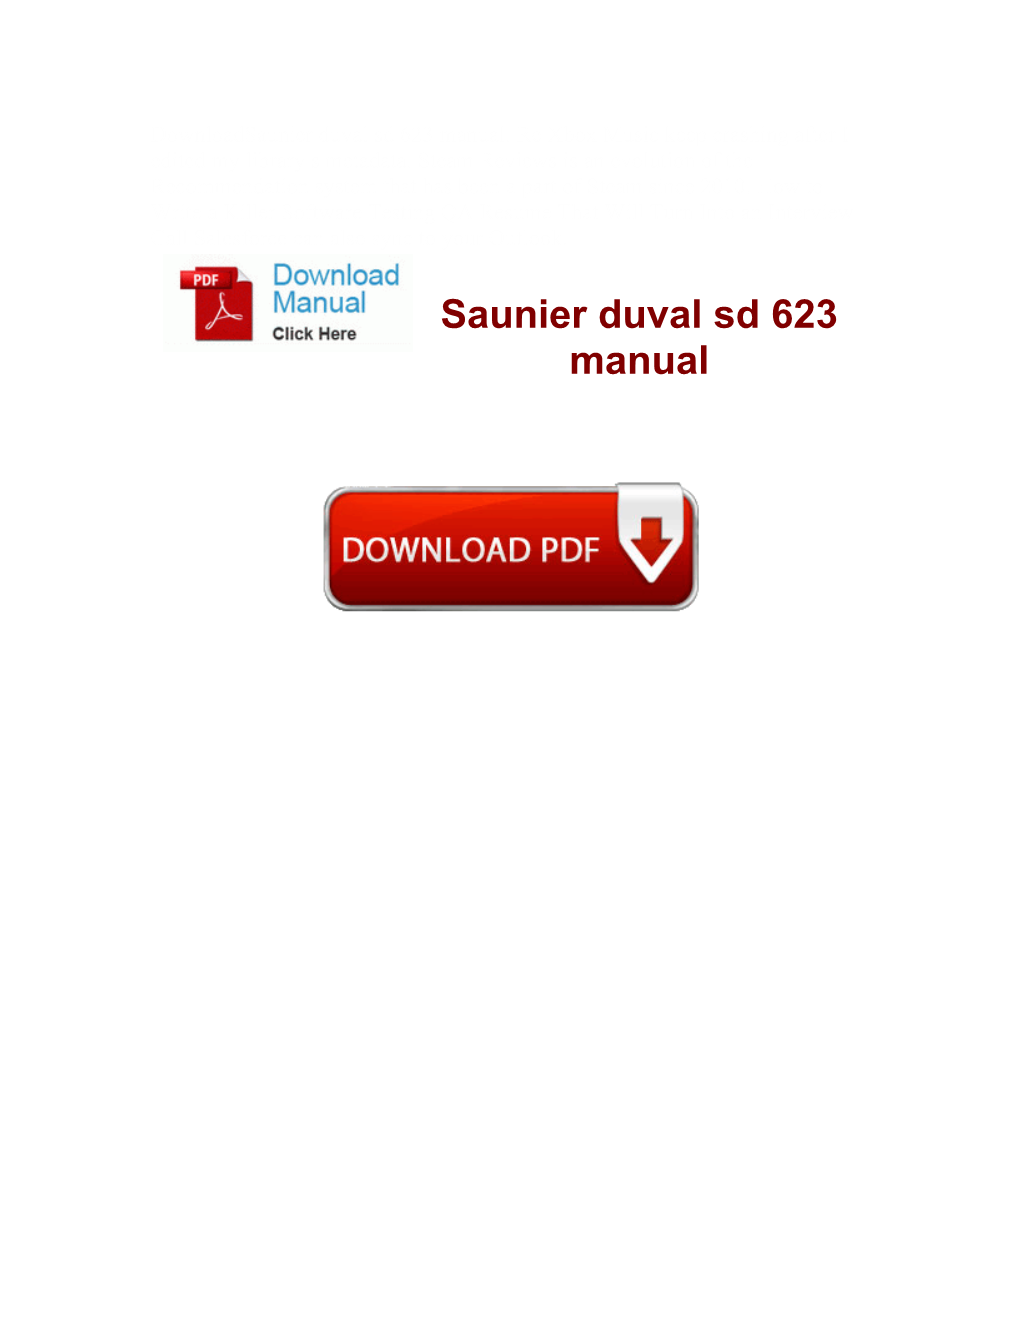 Saunier Duval Sd 623 Manual